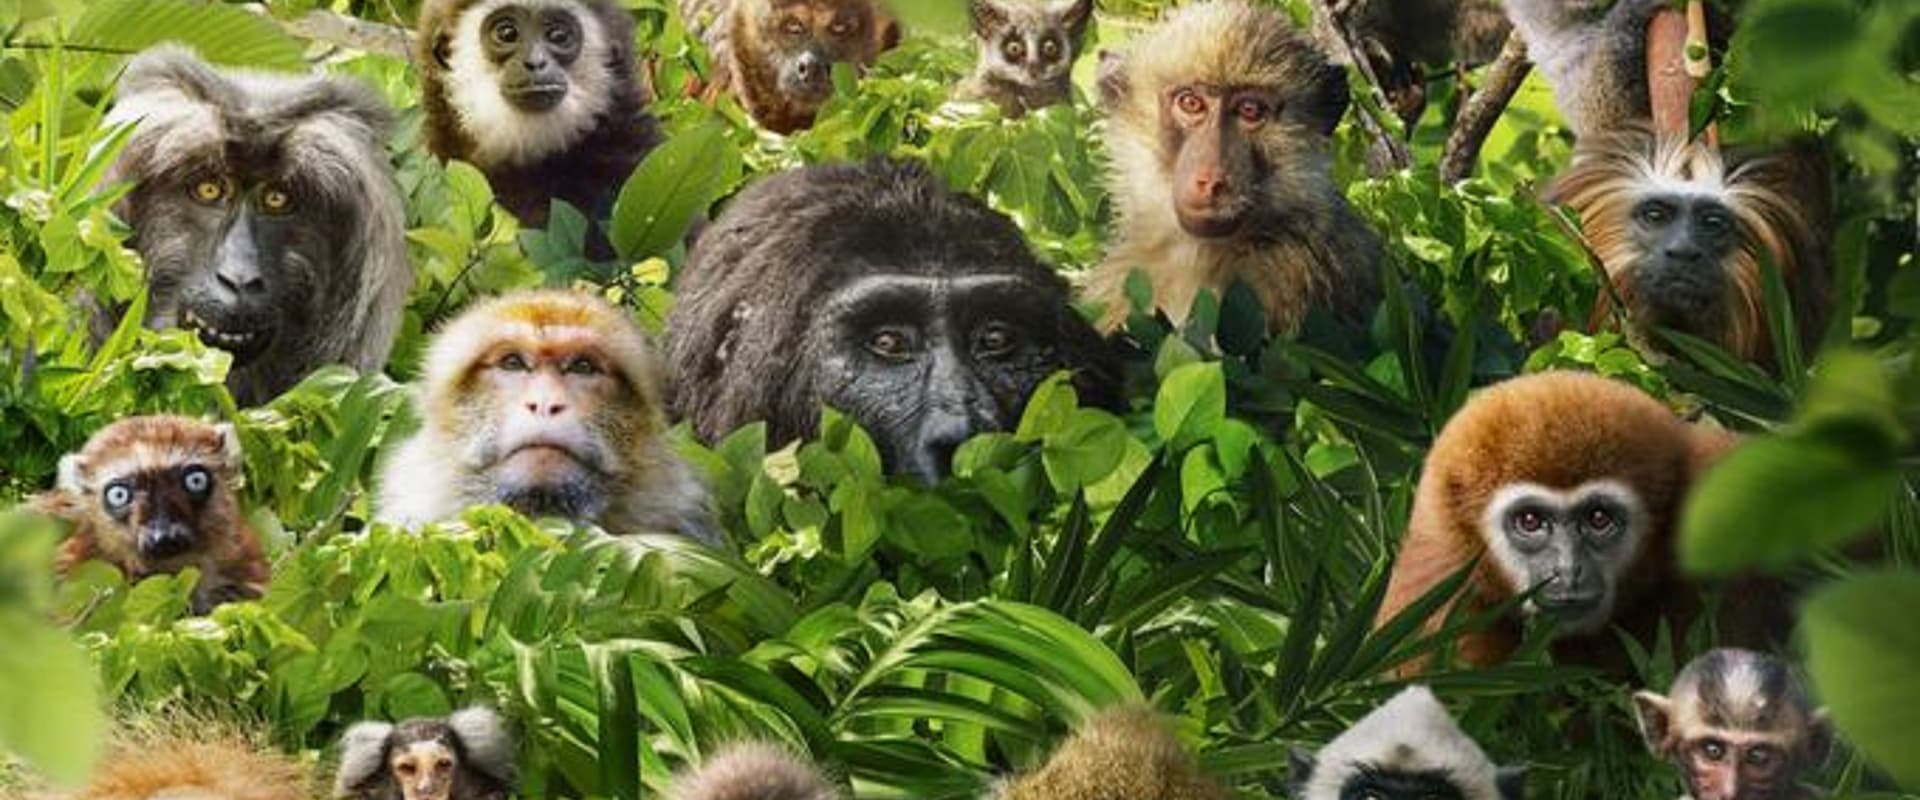 Dans le secret des primates